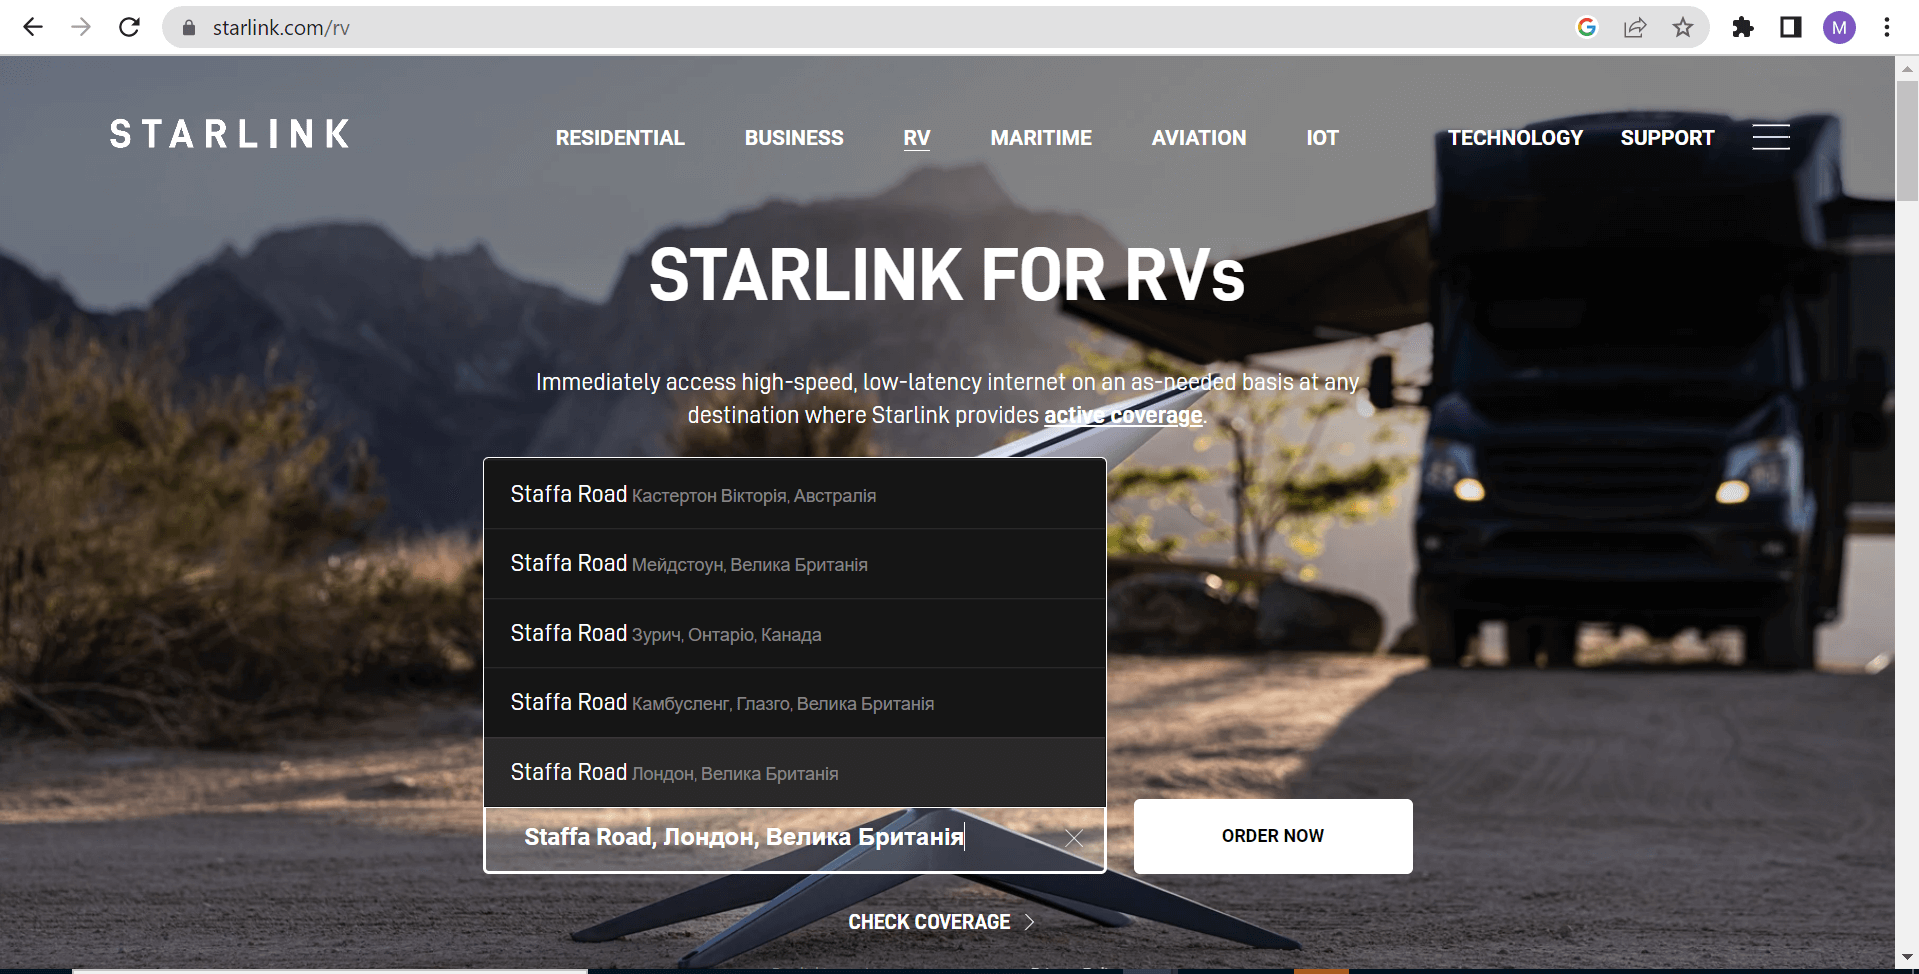 Як самостійно замовити Starlink з доставкою в Україну? - 3